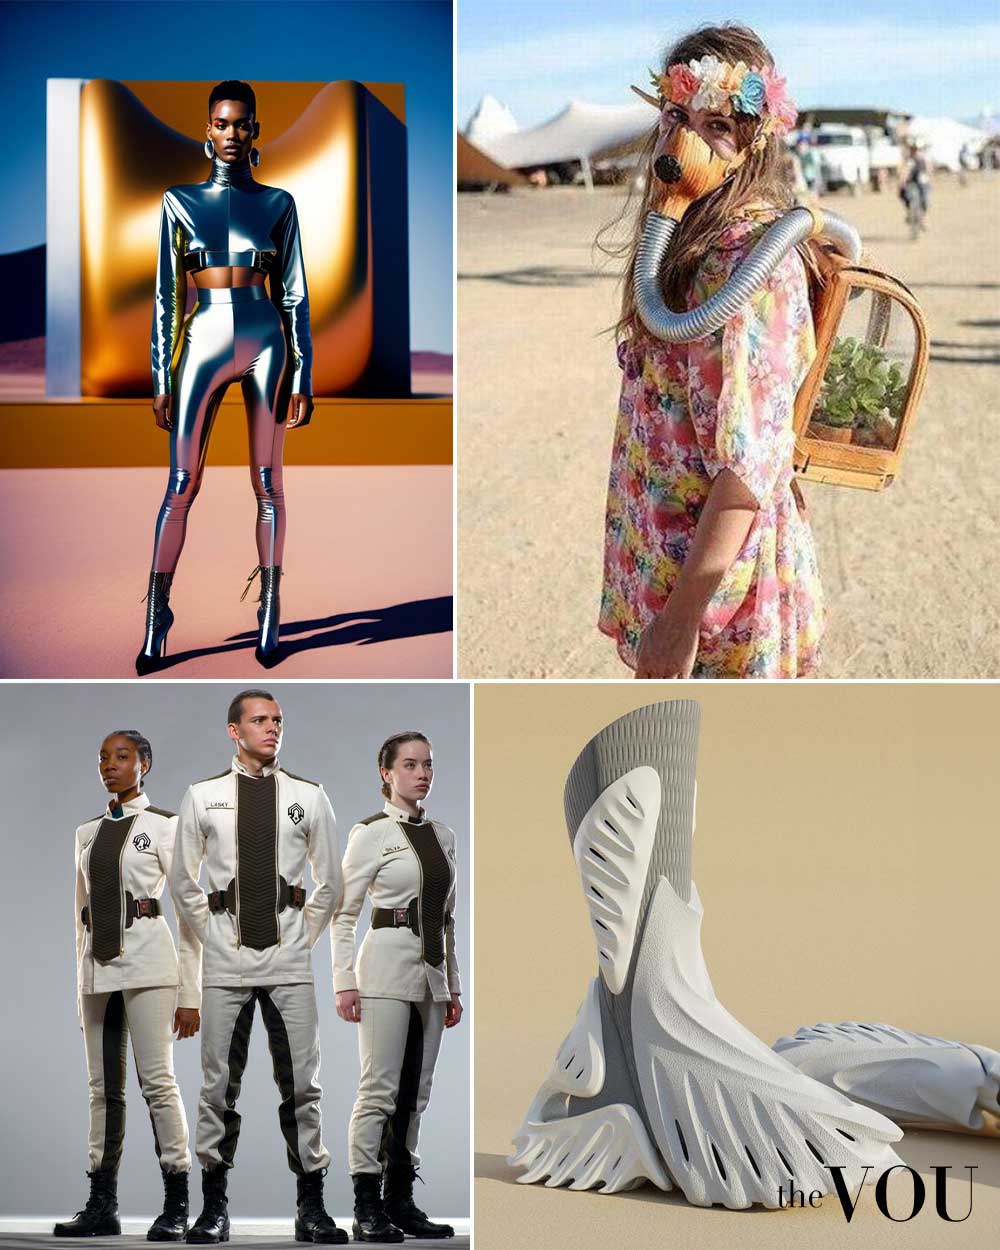 Retro-futurism in fashion